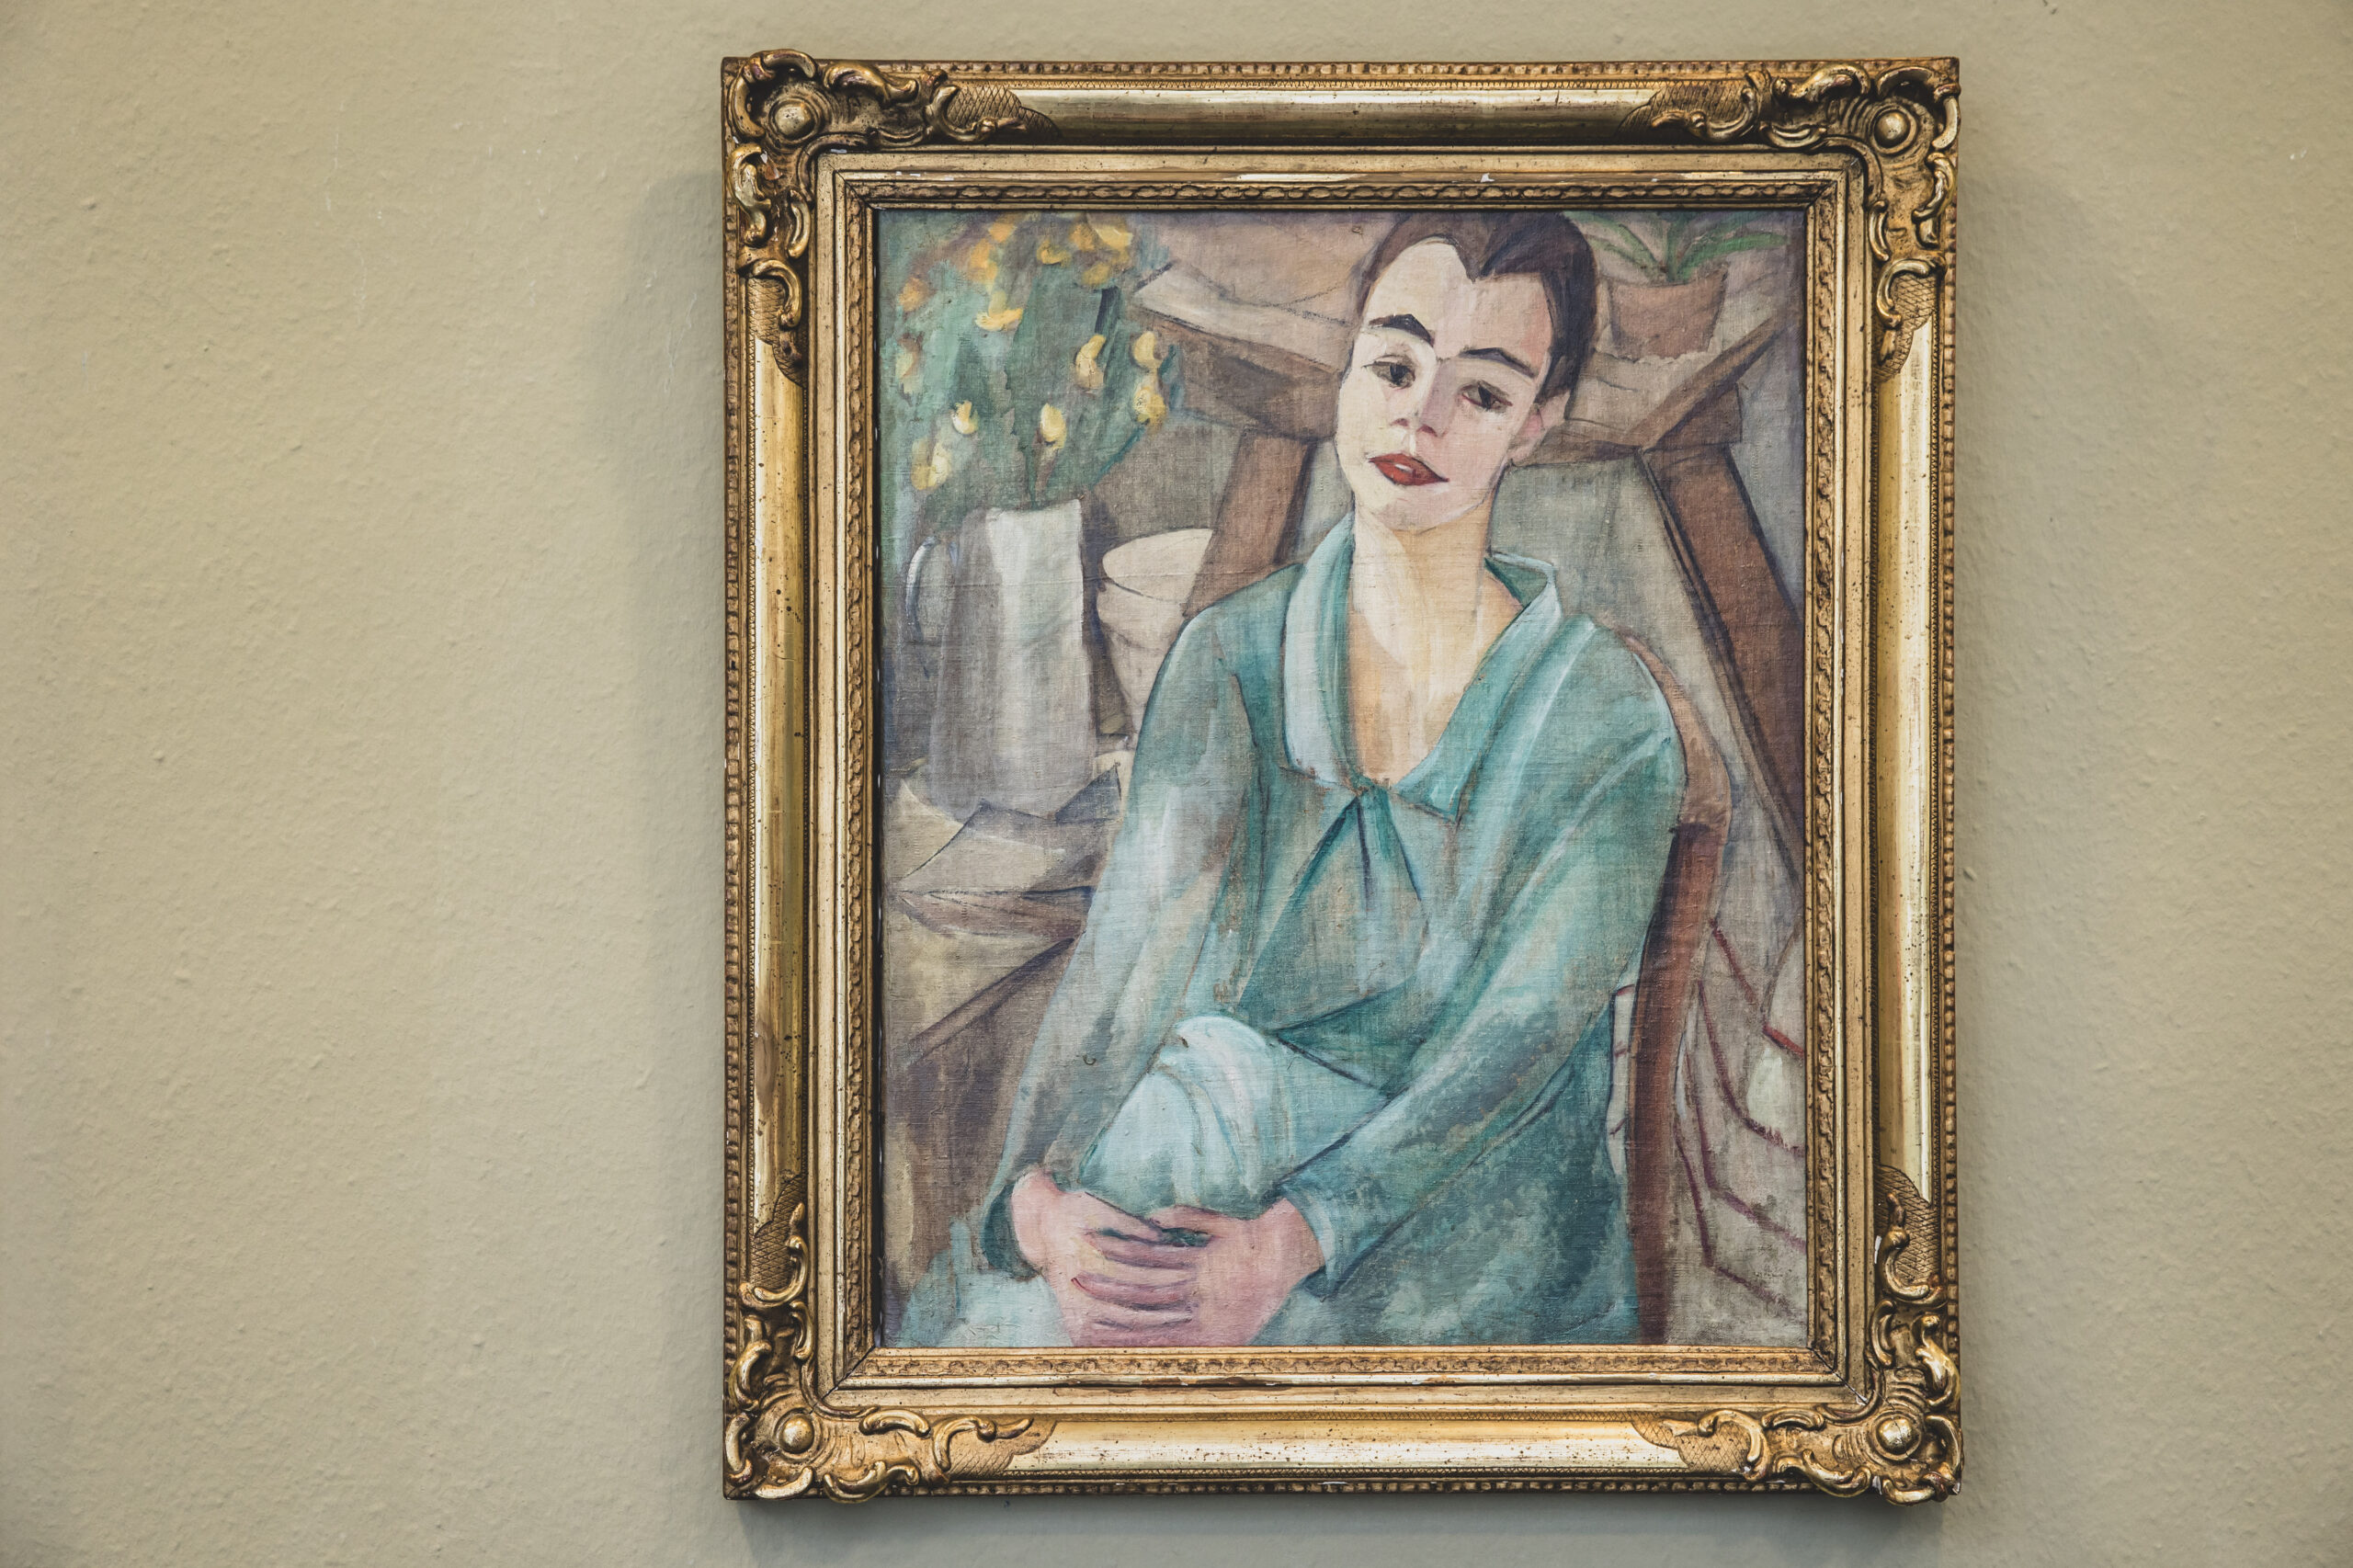 Das Gemälde zeigt eine Frau